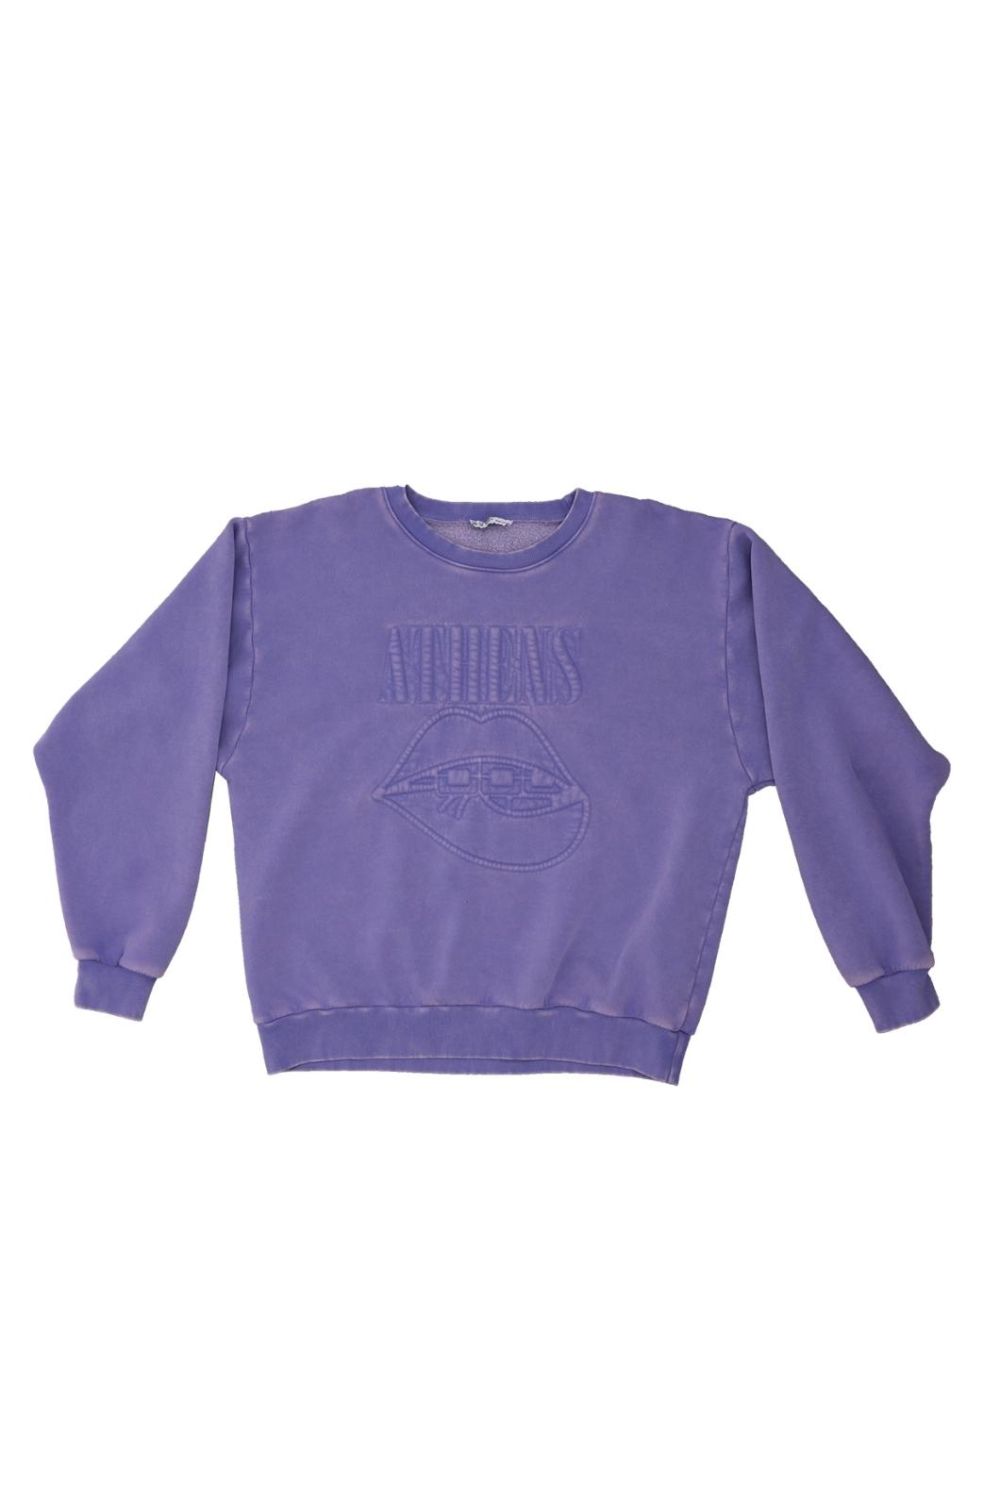 Sweater The Ultimate Unisex Vintage Purple